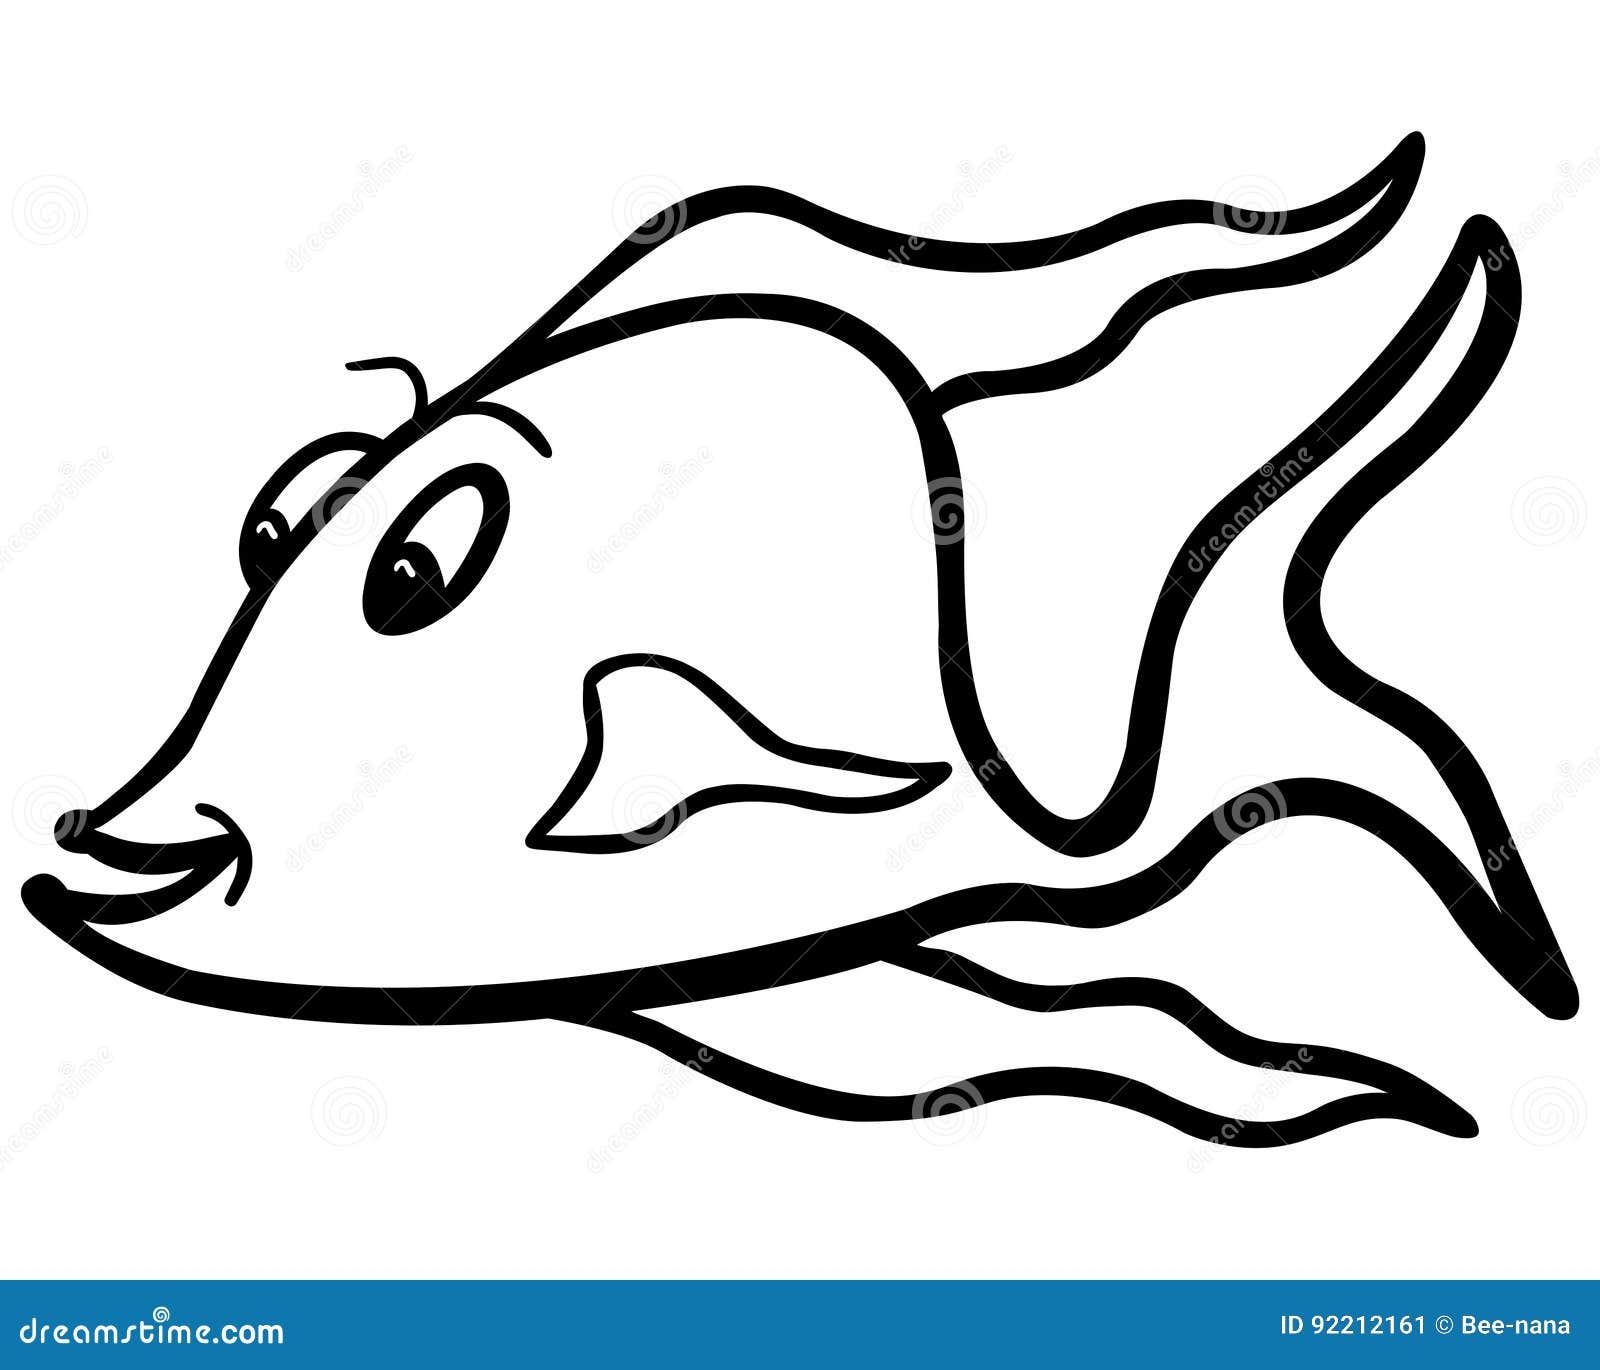 Fish Clip Illustrations & Vectors